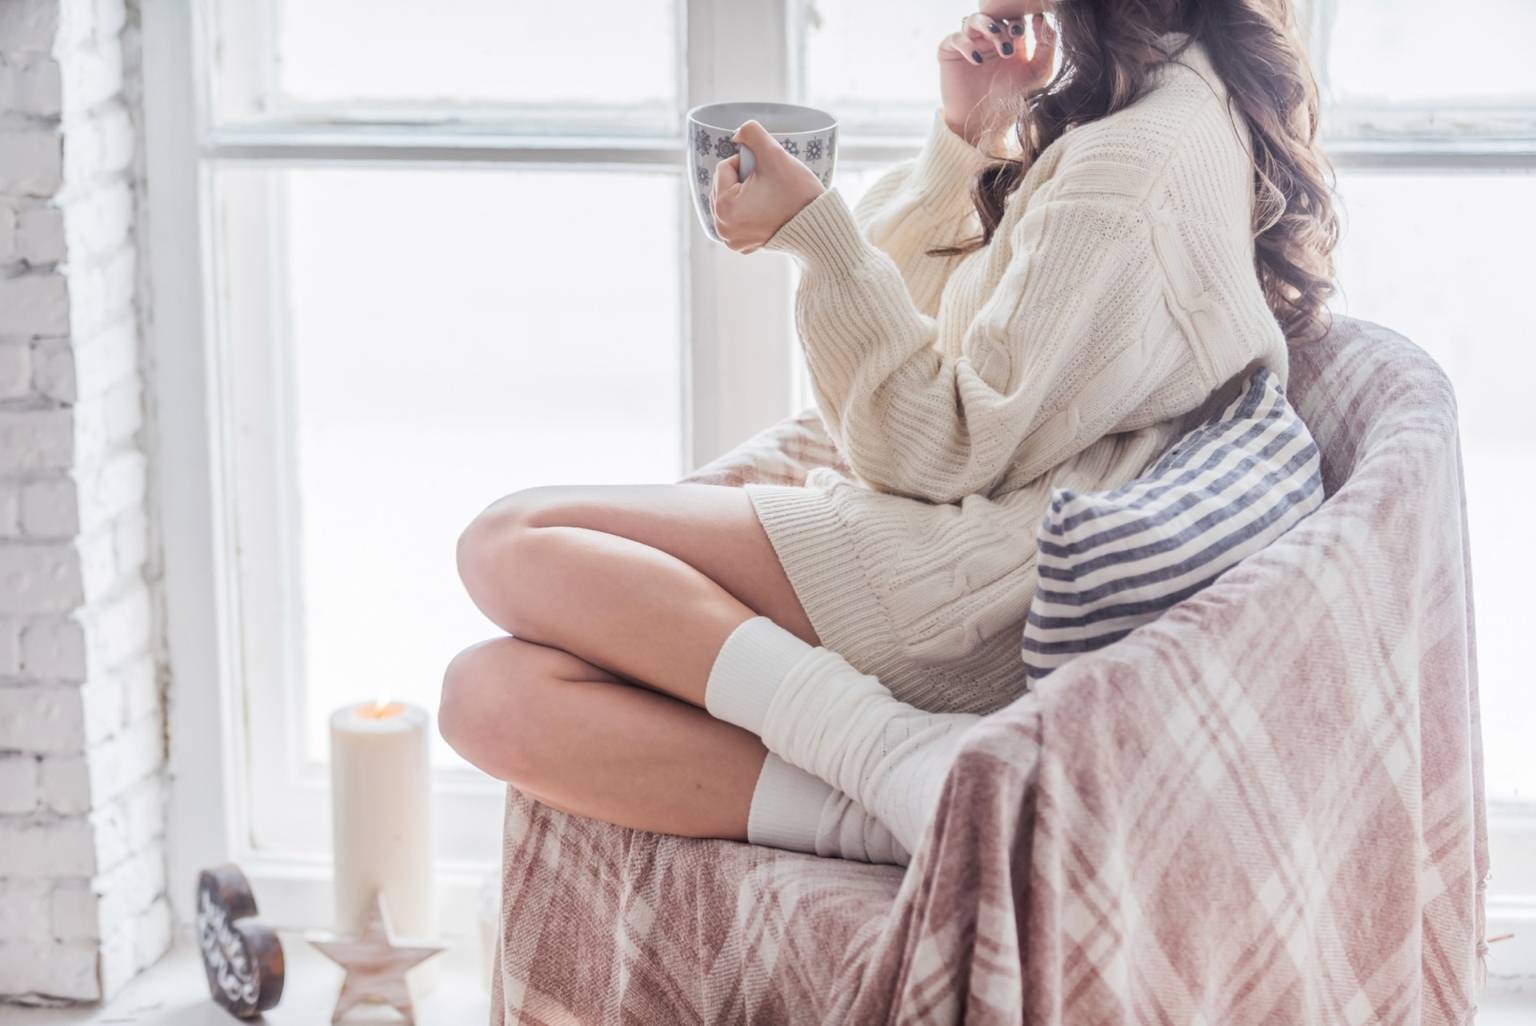 Jak szybko wyleczyć przeziębienie? Co na przeziębienie? Kobieta siedzi na fotelu w kocu, z podkulonymi nogami, w ciepłym swetrze i skarpetkach, pije gorącą herbatę i patrzy w okno.